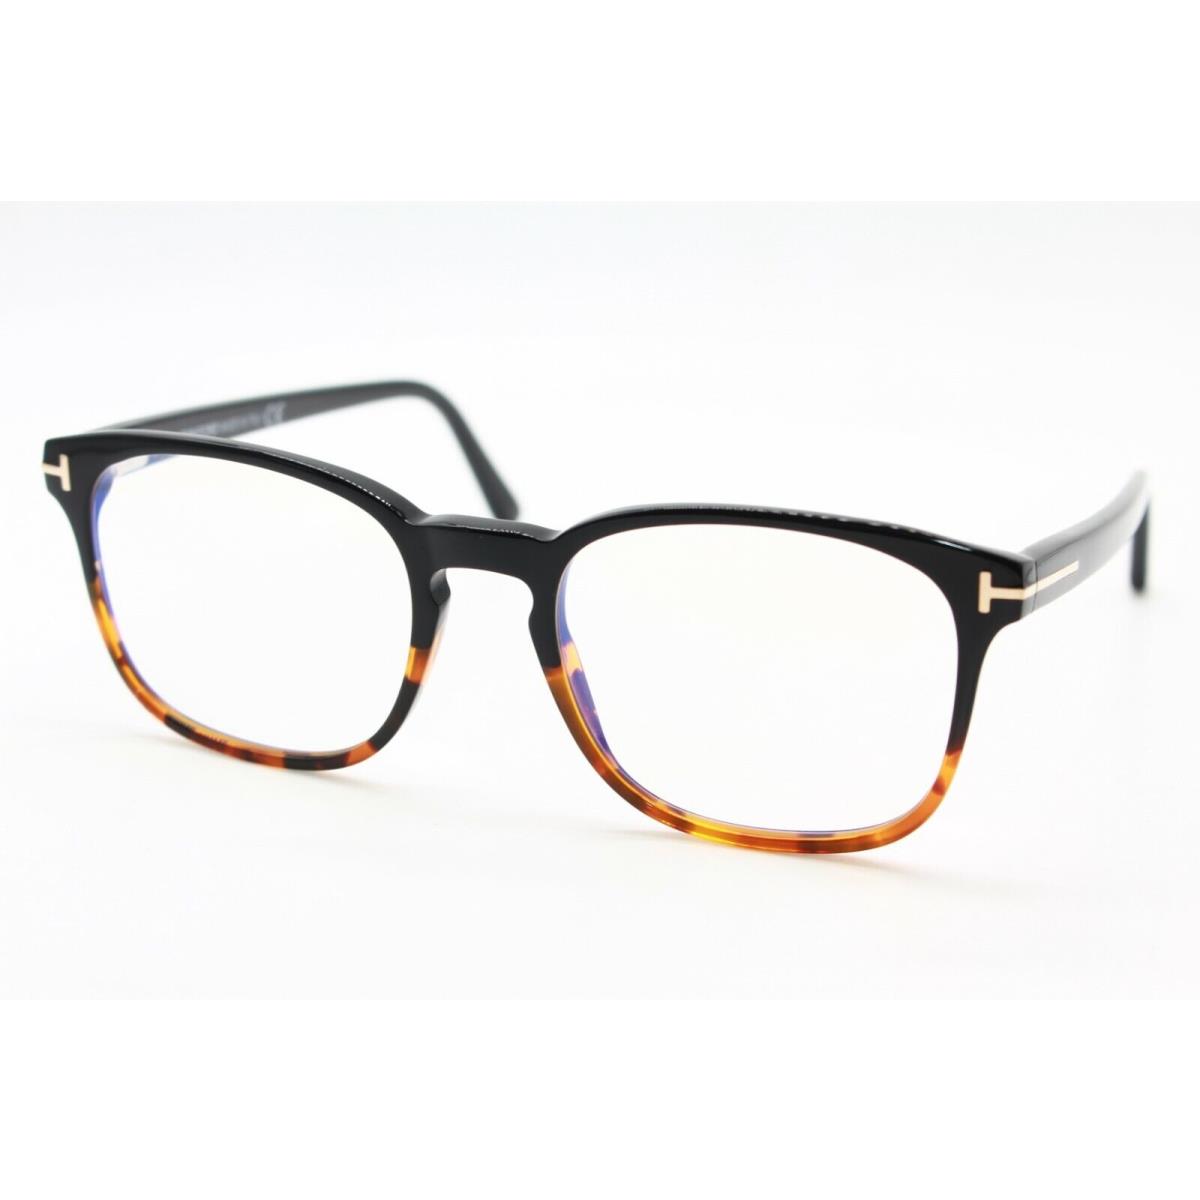 Tom Ford TF 5605-B 005 Black Eyeglasses Frames RX TF5605-B 52-19